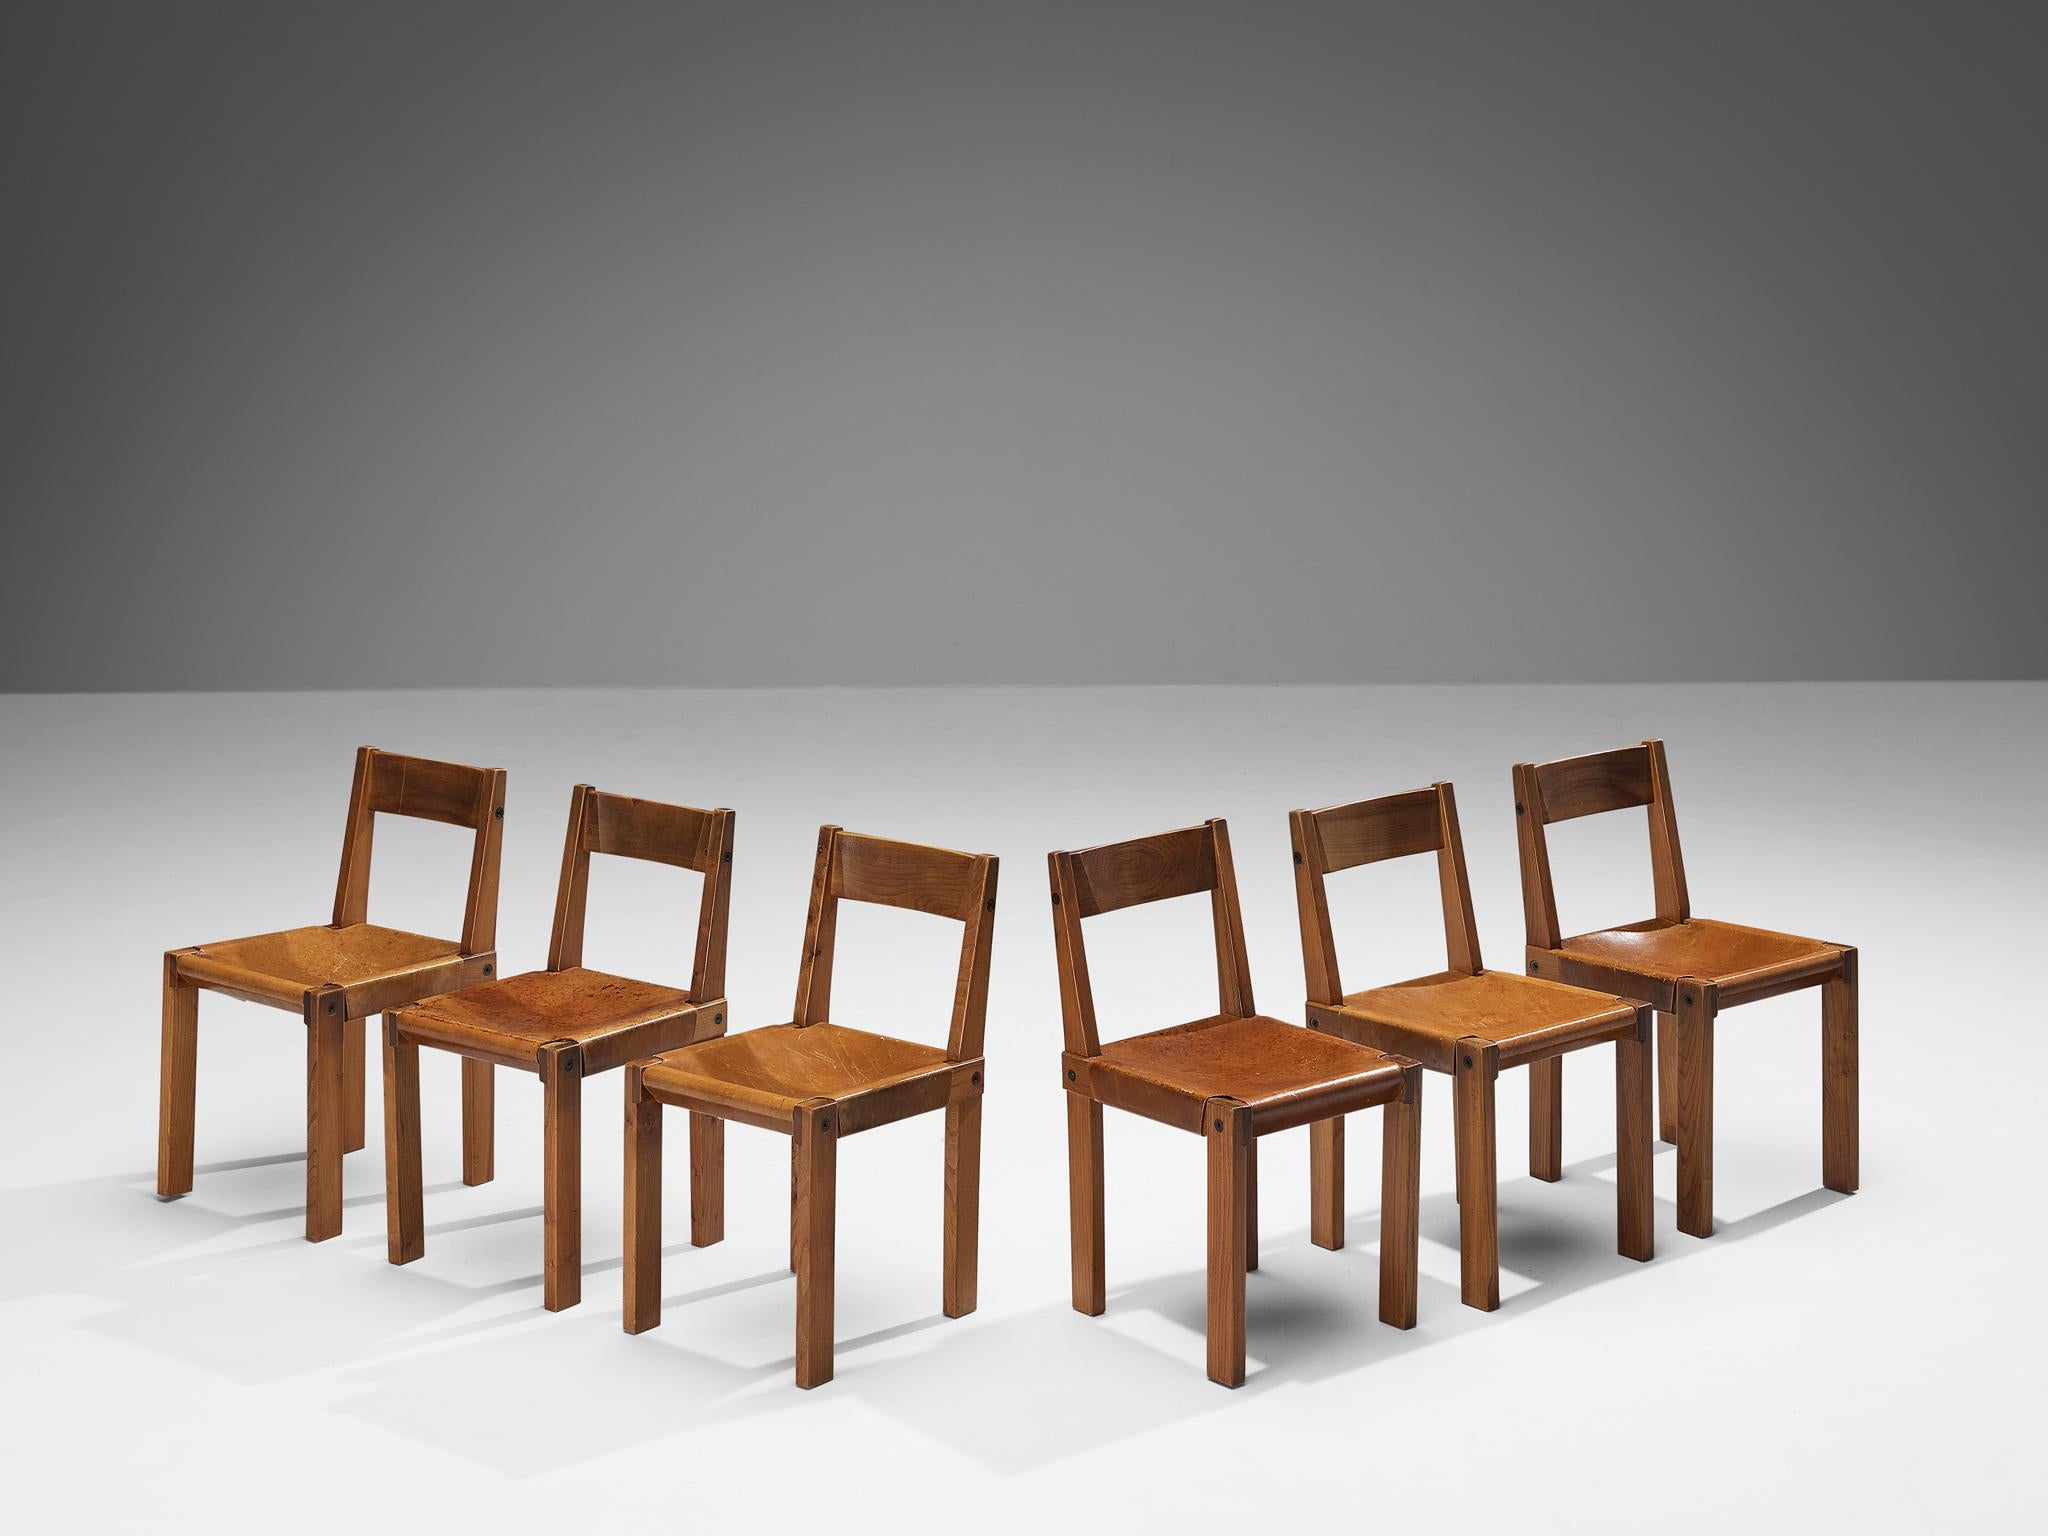 Pierre Chapo, sechs Esszimmerstühle, Modell 'S24', Ulme, Leder, Cord, Frankreich, 1967

Bei diesen Stühlen handelt es sich um frühe Auflagen, die von Pierre Chapo entworfen wurden, der für seine Verwendung von massivem Ulmenholz und sein Engagement